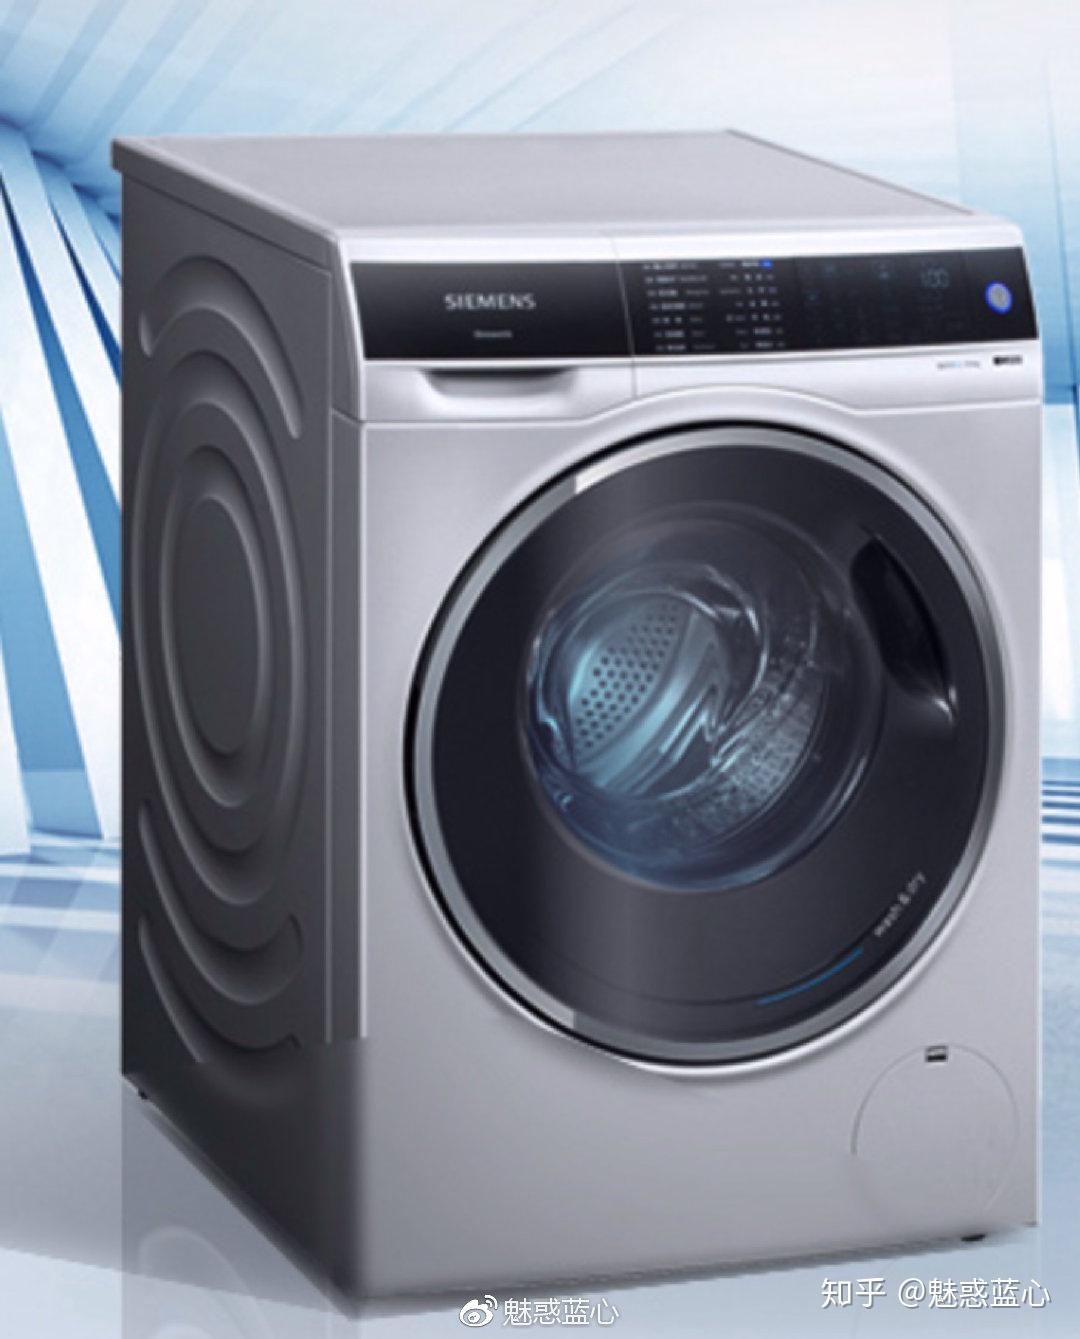 如何评价新发布的小米洗衣机产品:米家互联网